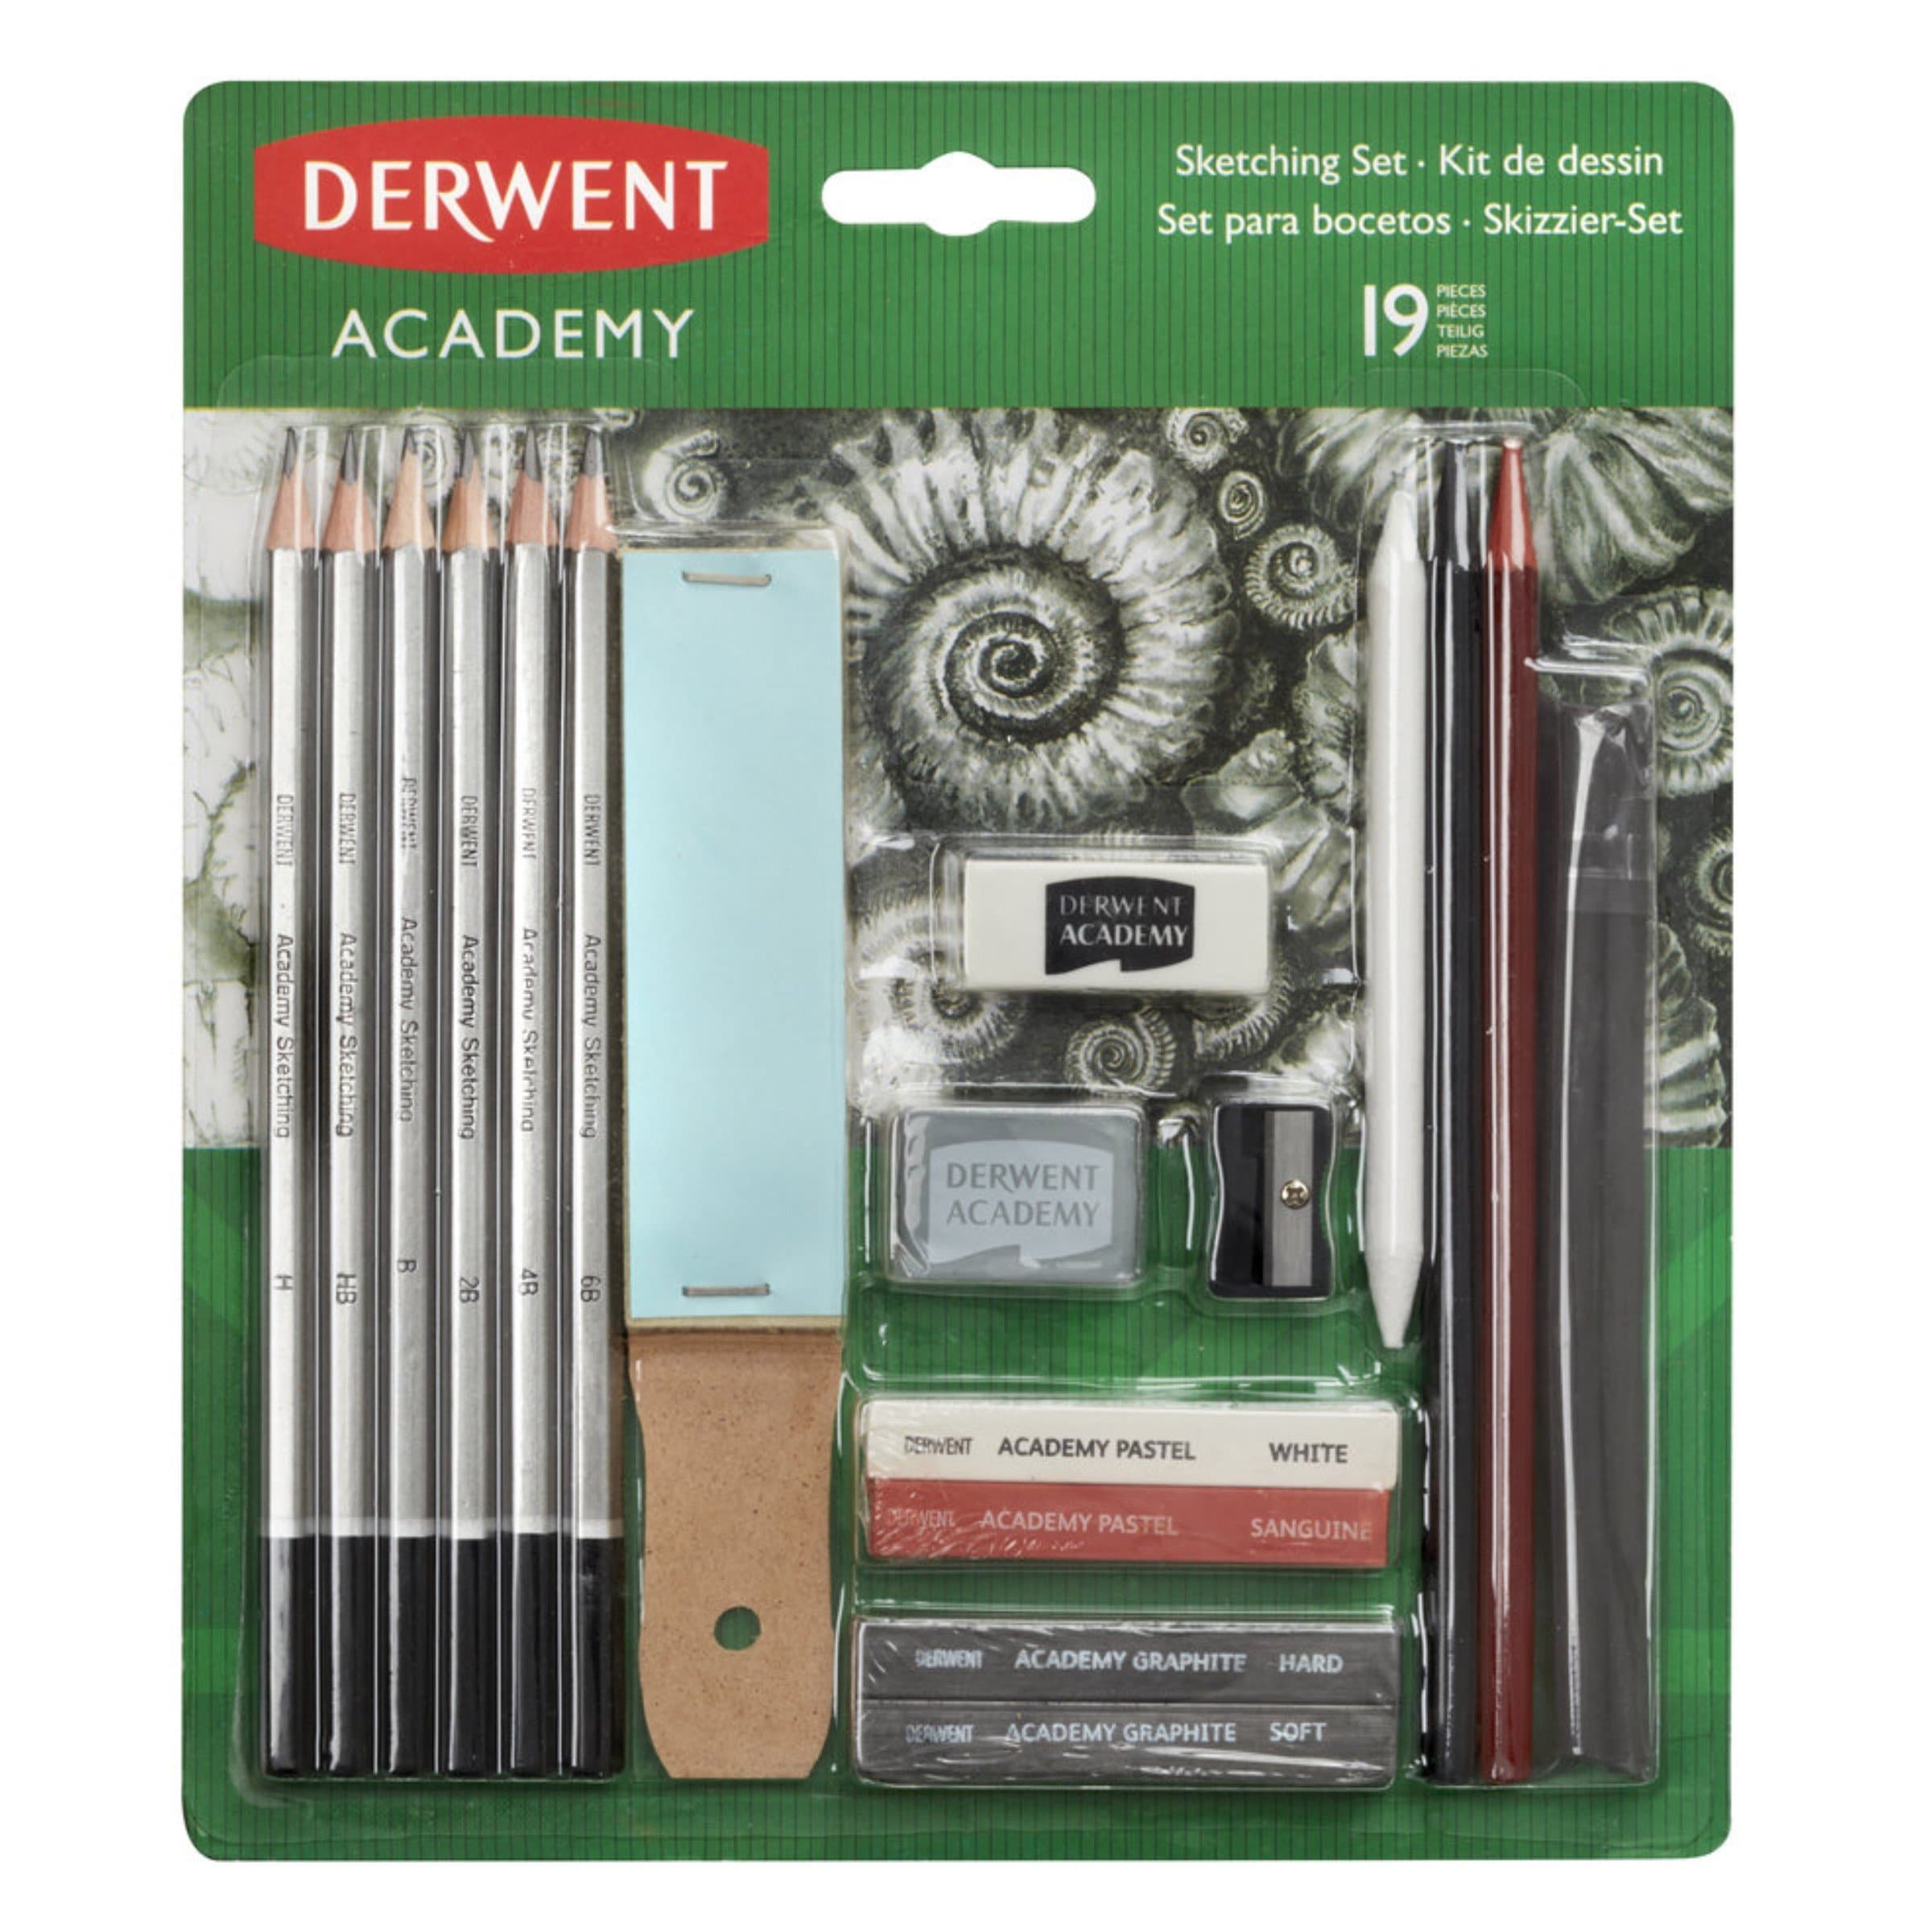 Derwent Set sketching academy #2300365